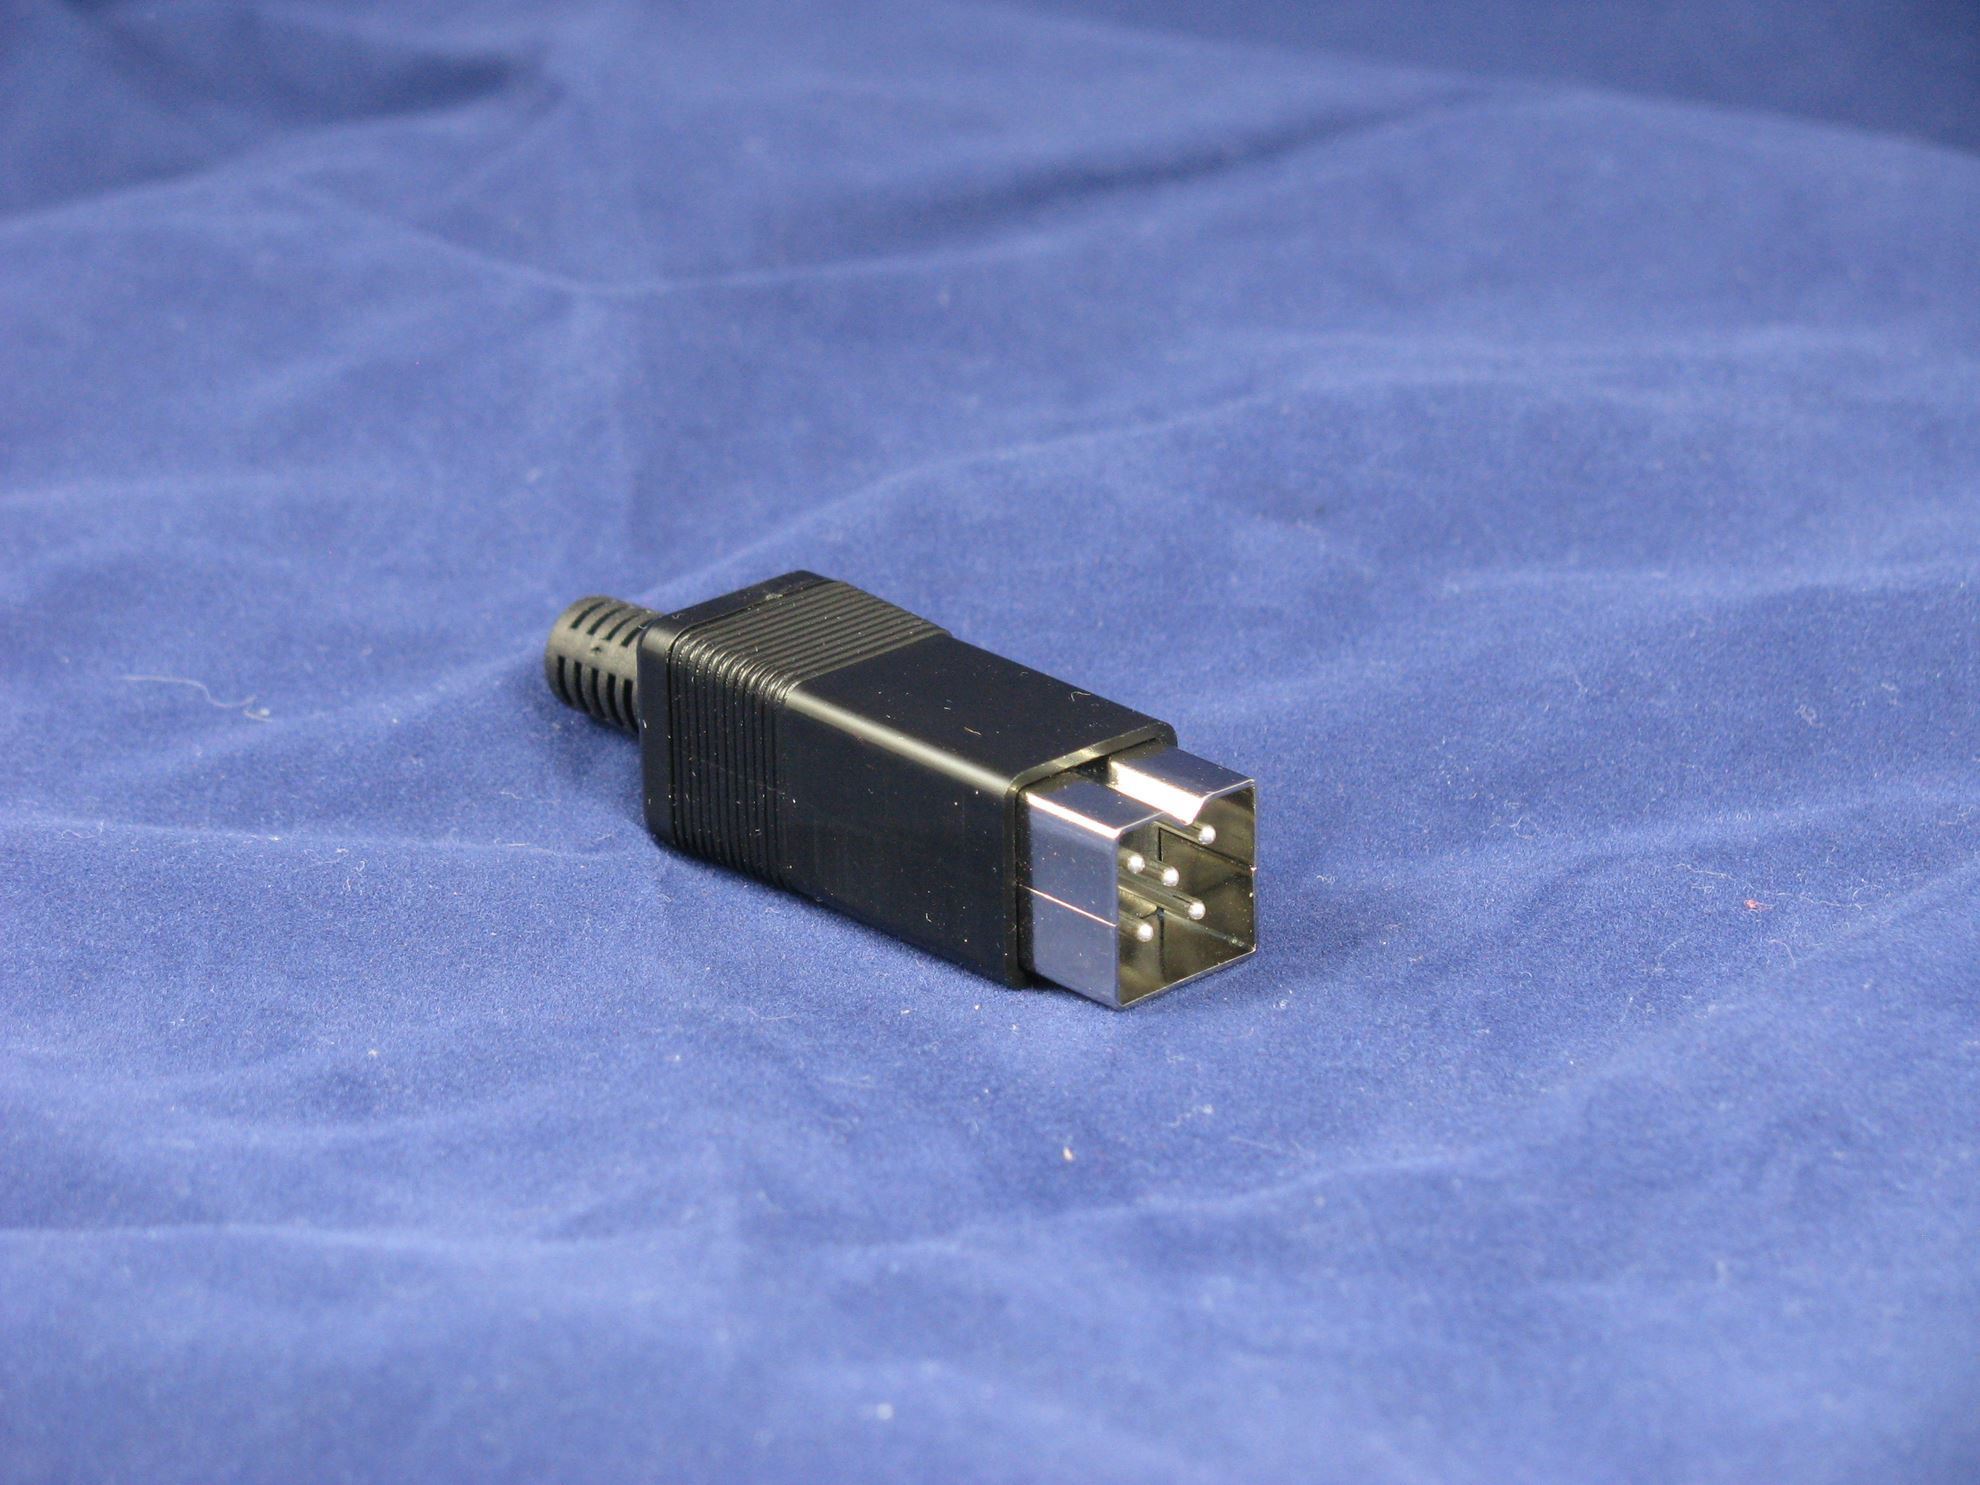 Amiga 500 mini conversion plug